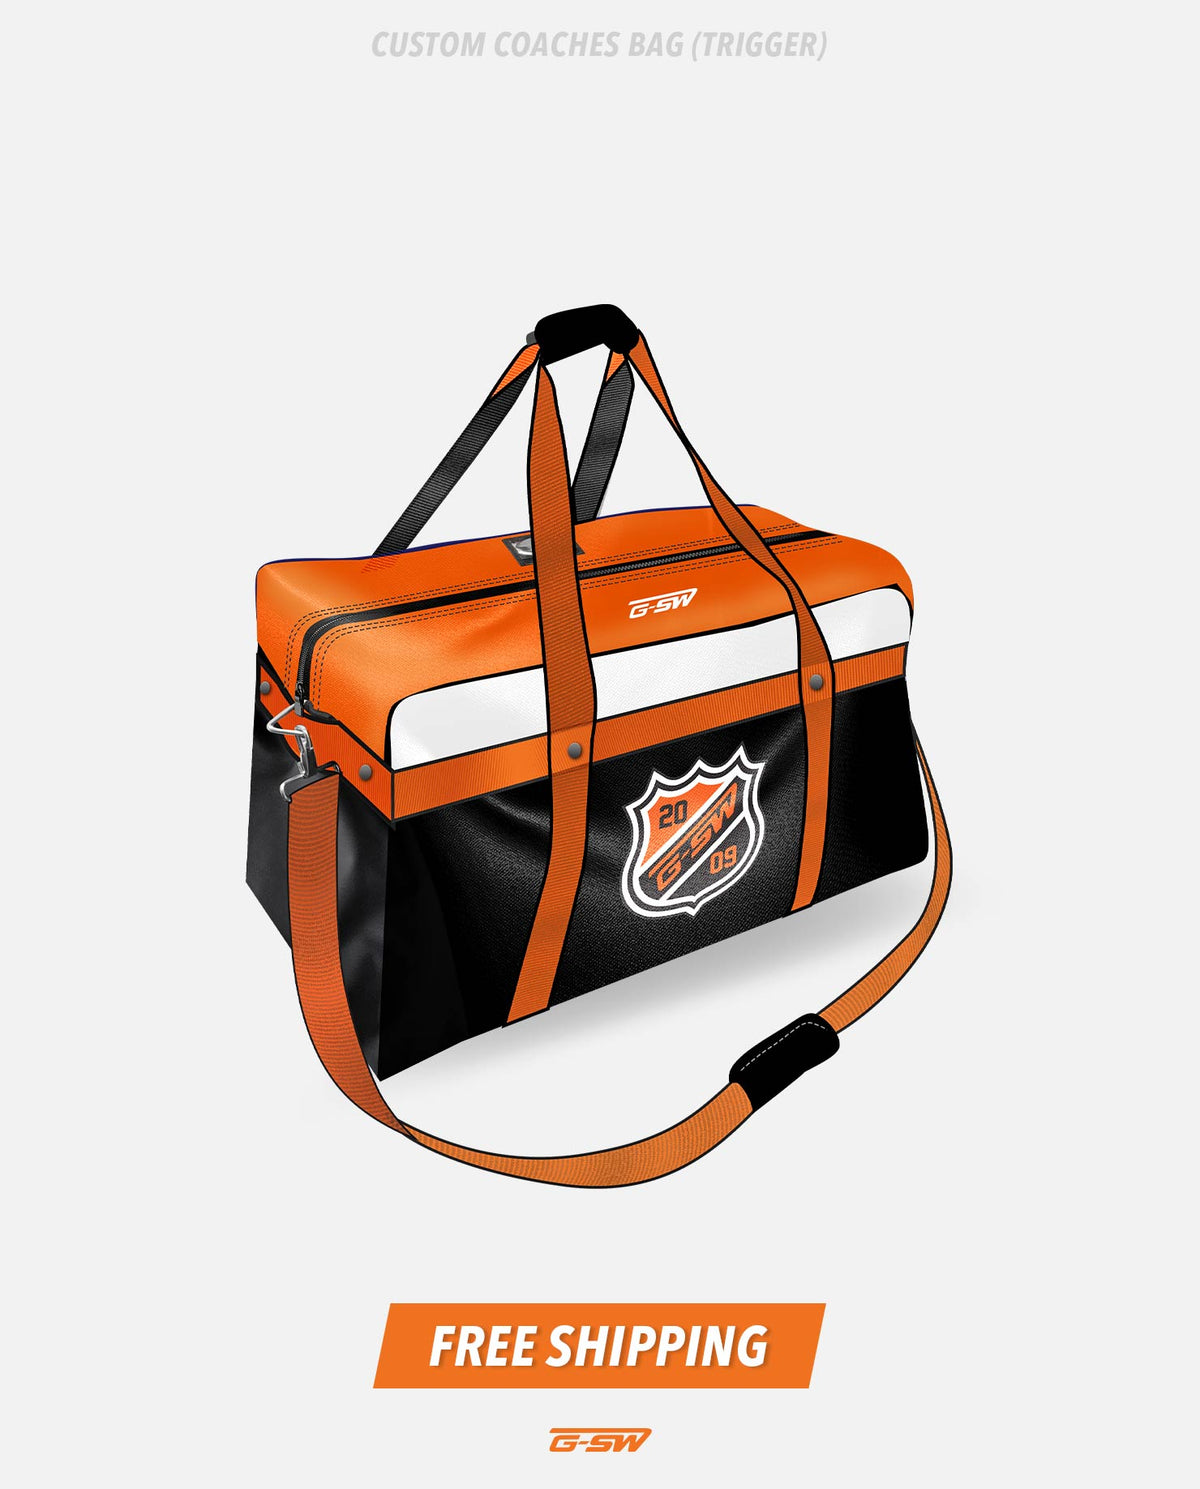 GSW Custom Coaches Bag (Trigger)